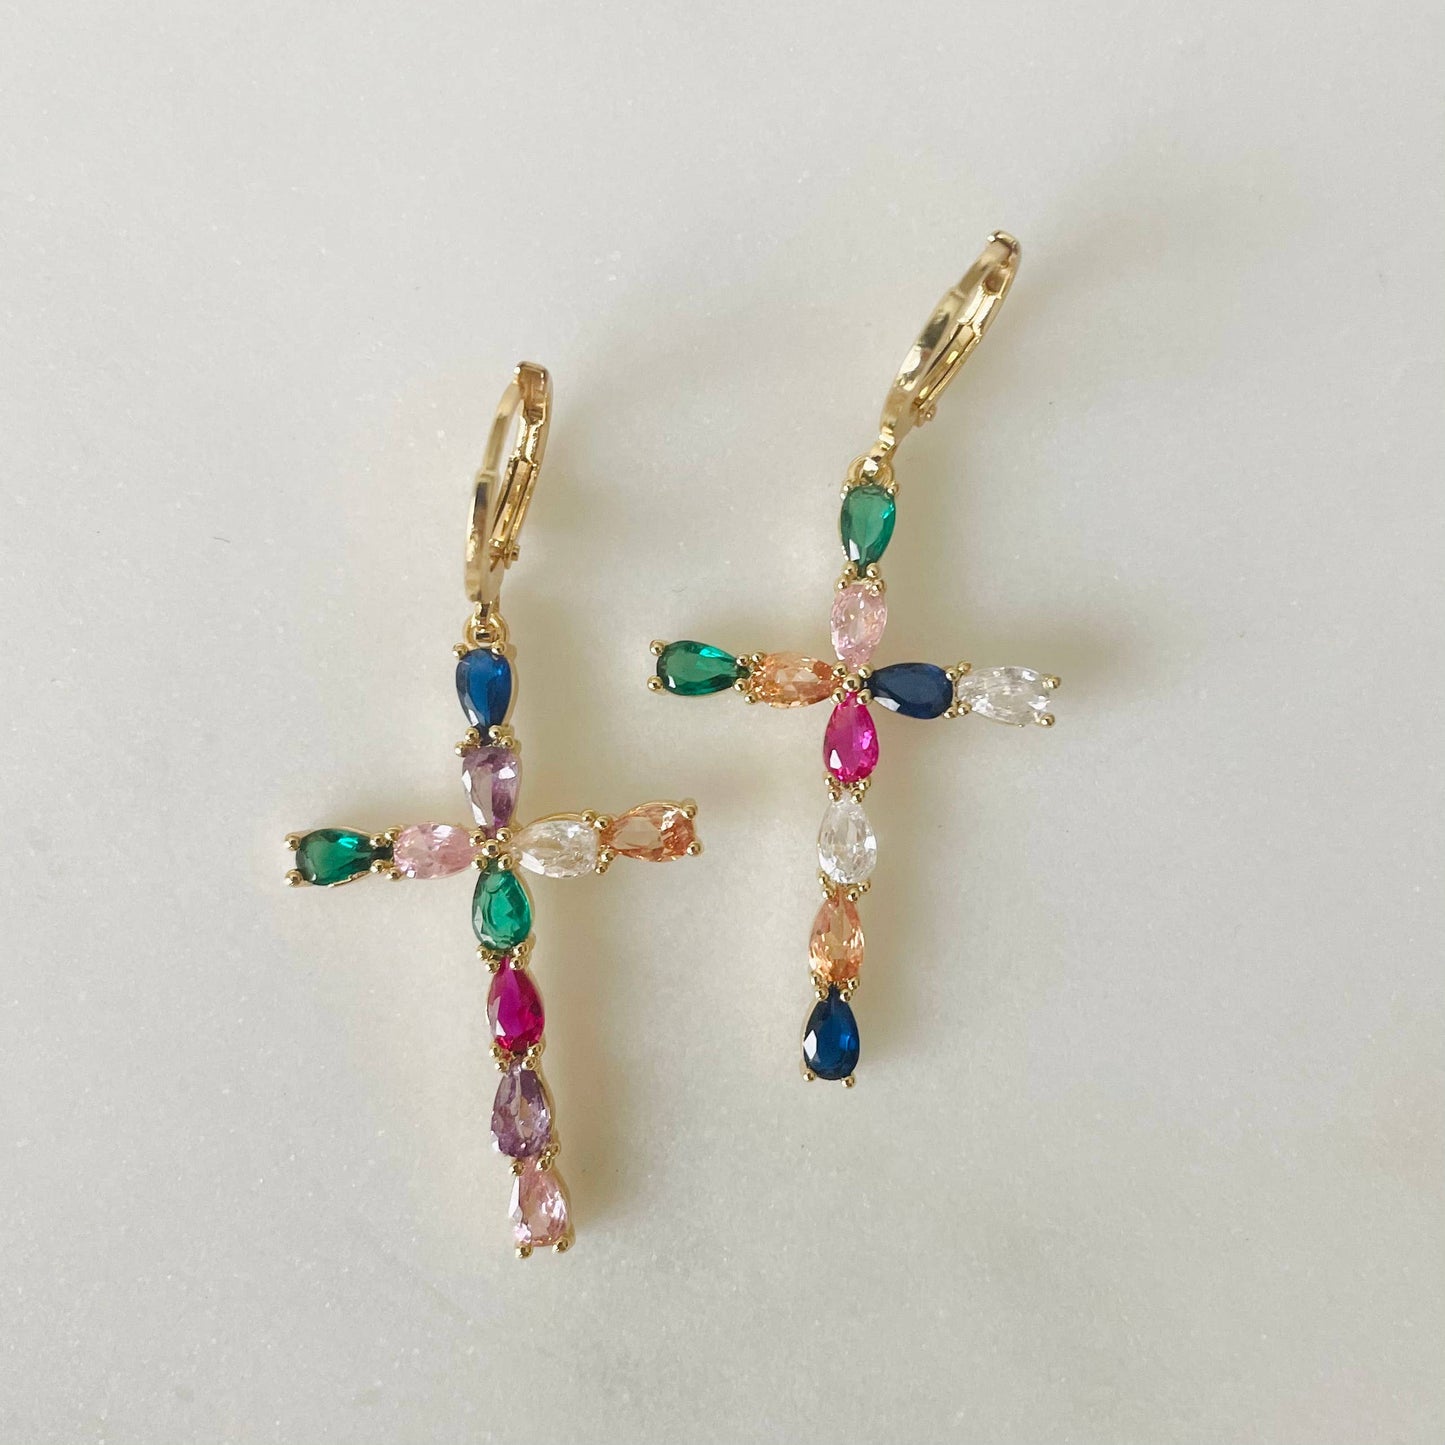 True Colors Earrings. Rainbow Gemstone Cross - CZ Stone earrings